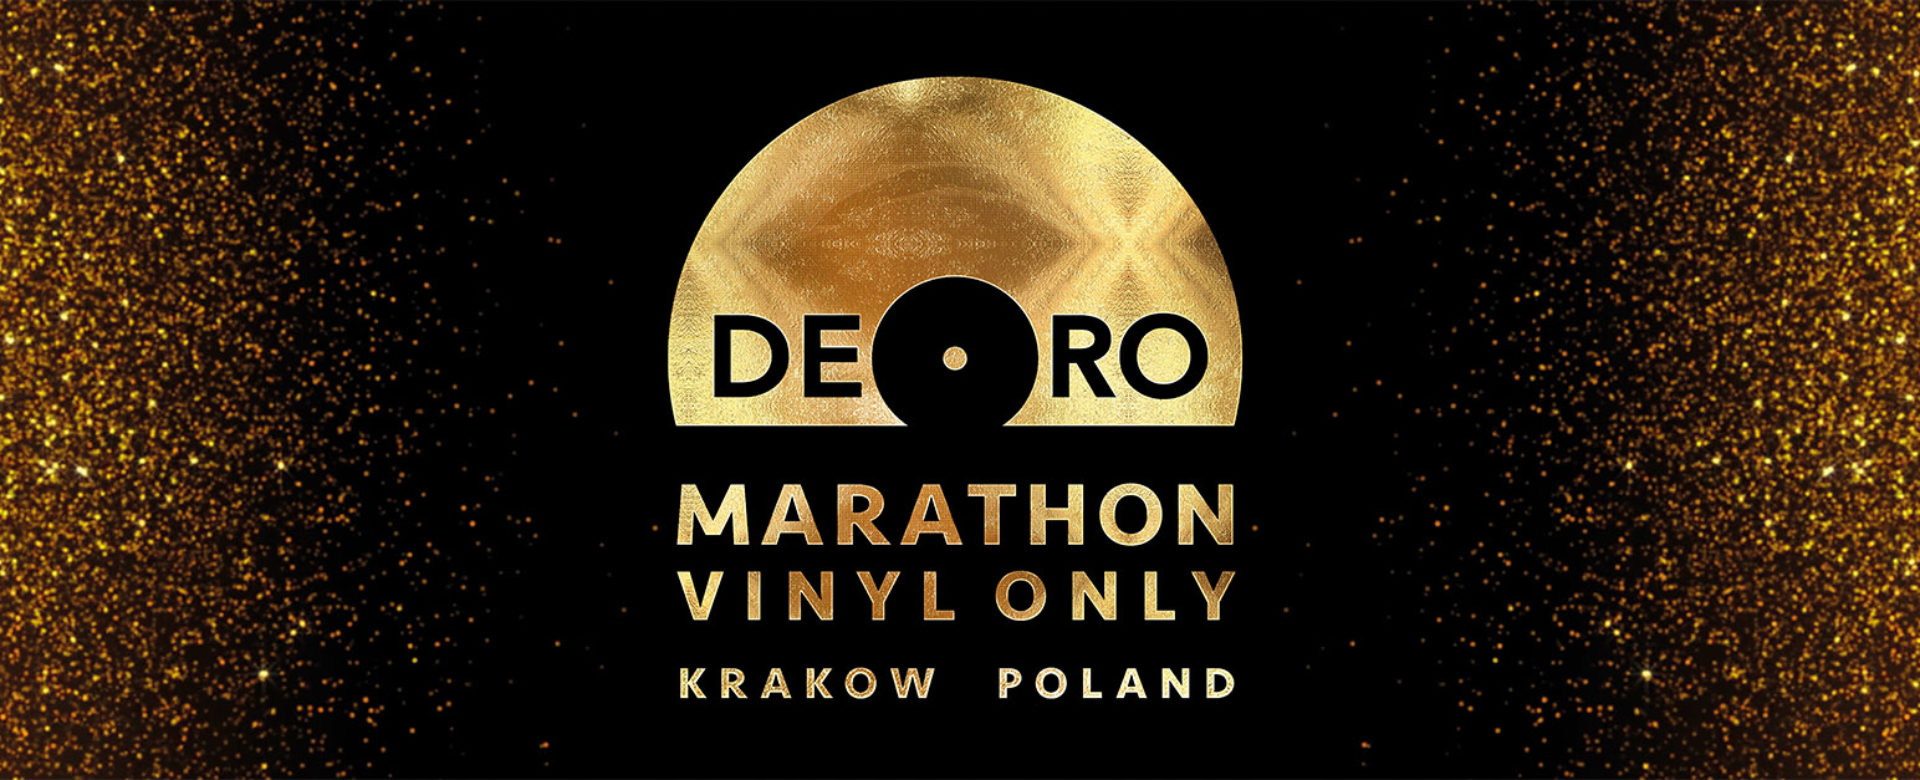 Kraków Vinyl Tango Maraton De Oro